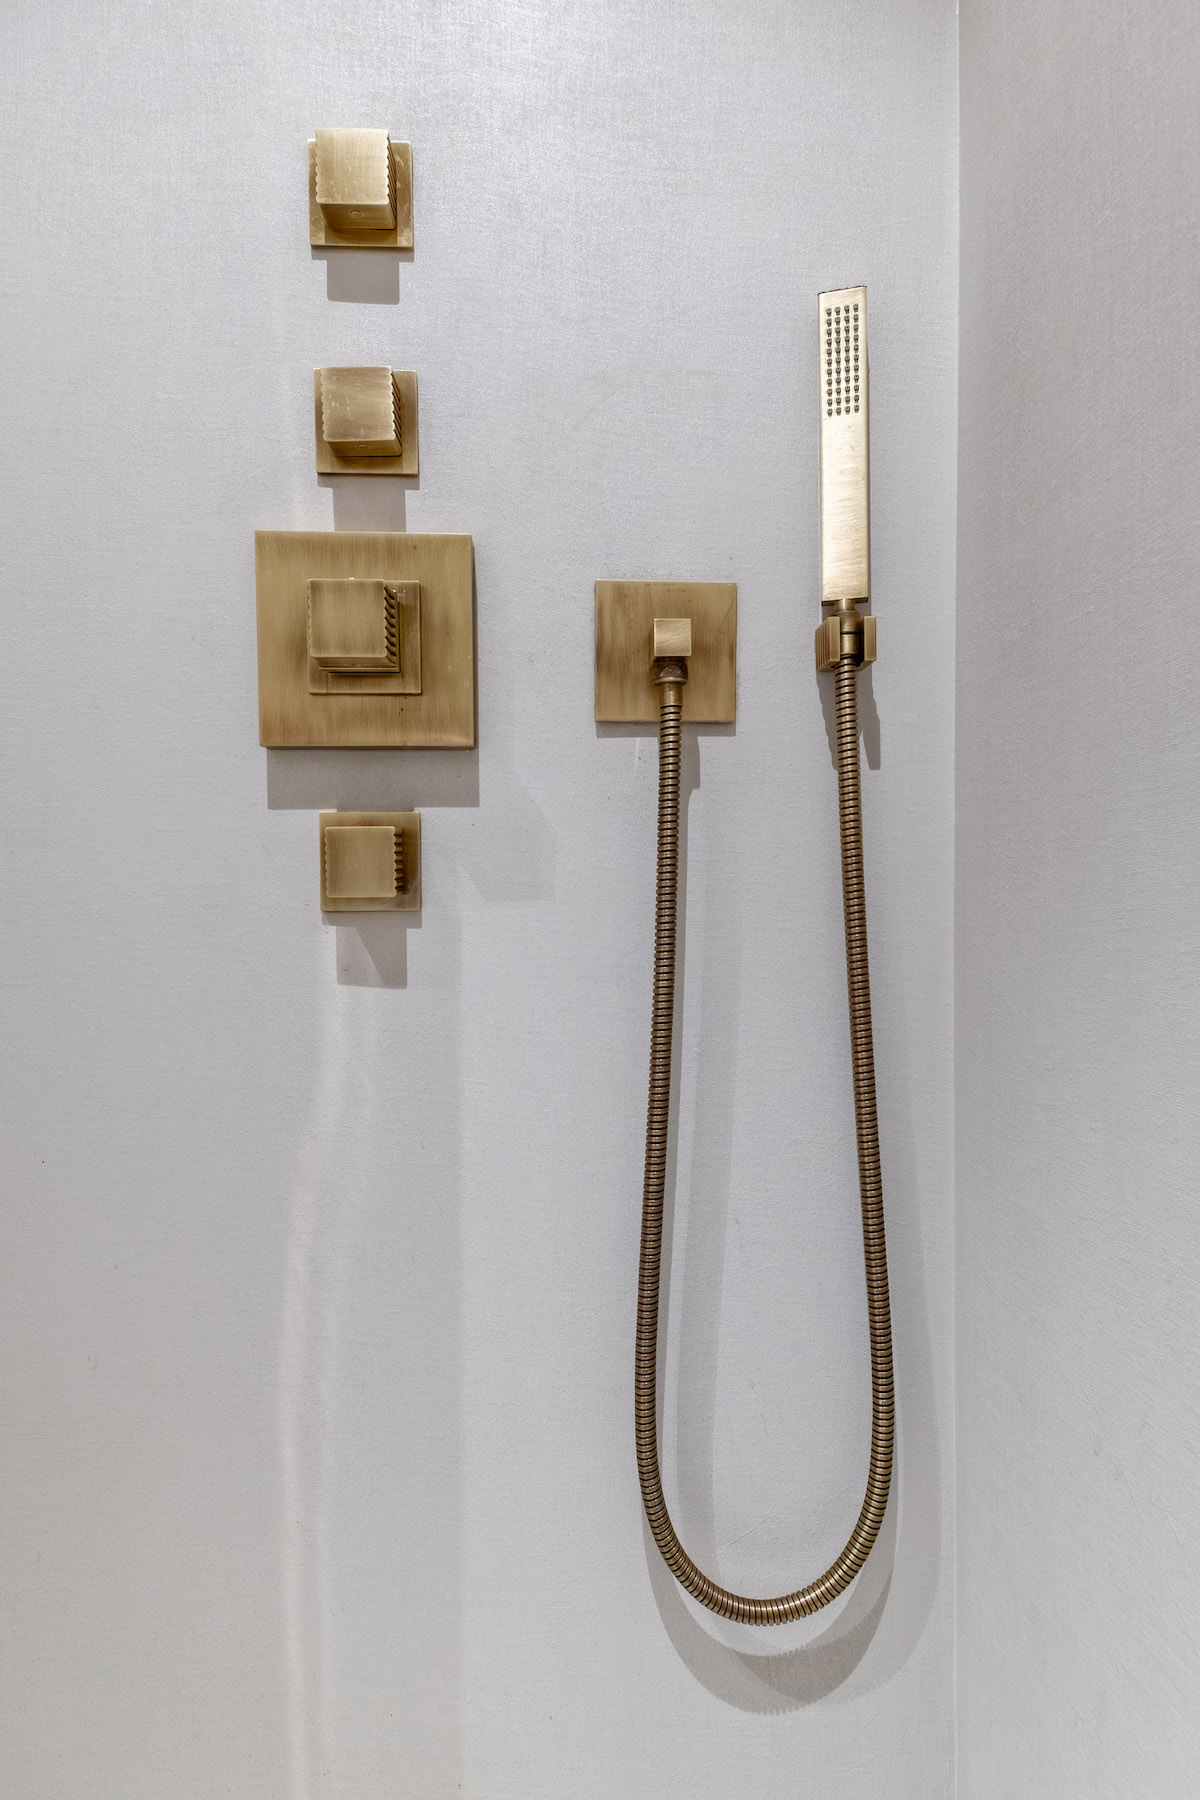 salle de bain douche italienne minimaliste bouton pommeau laiton moderne - blog déco - clem around the corner